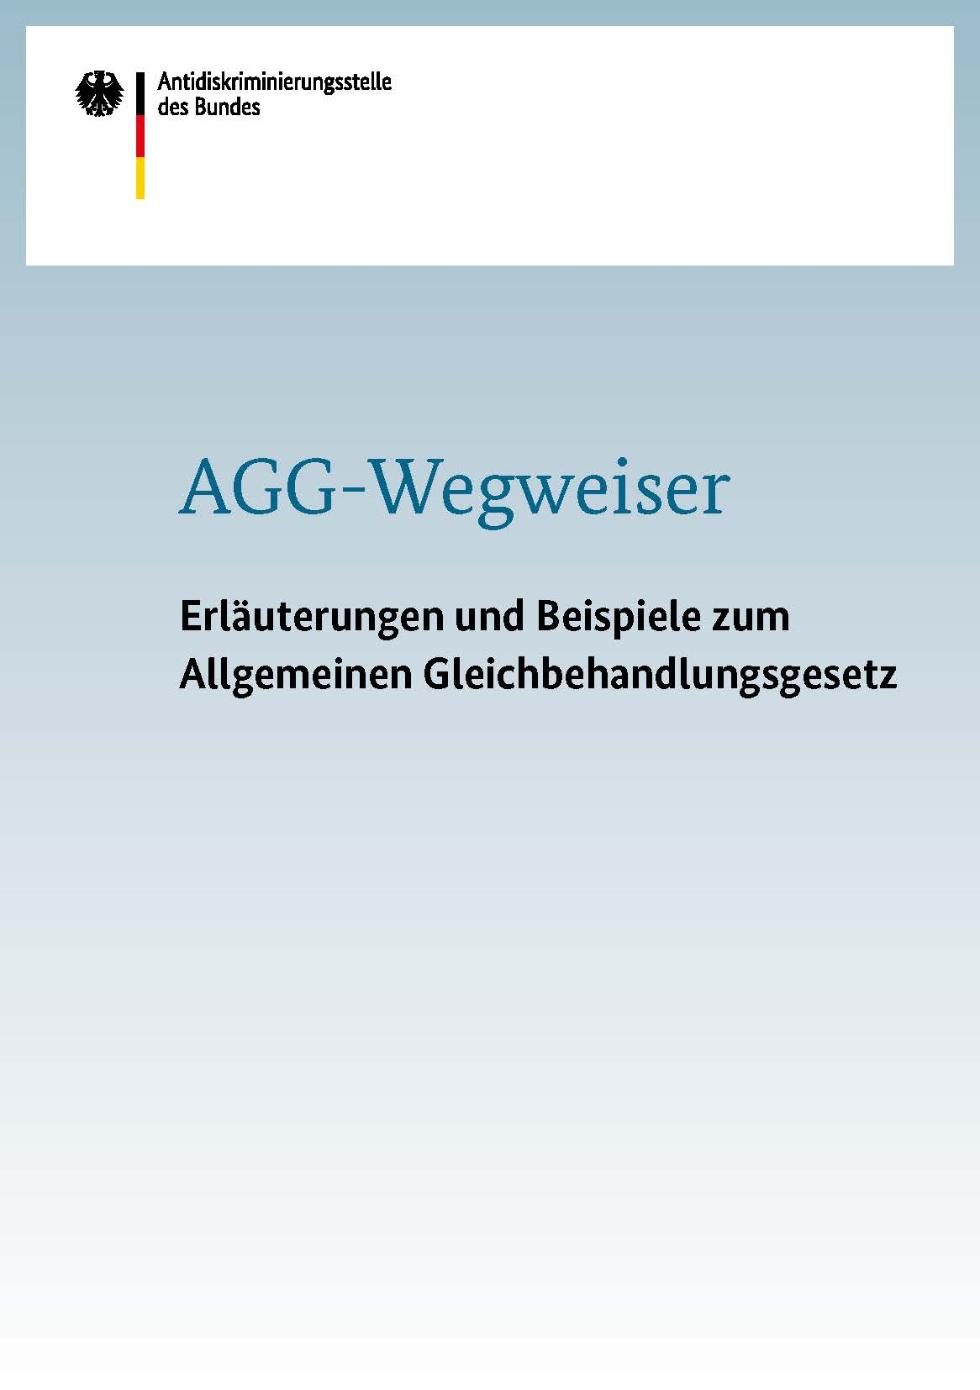 AGG-Wegweiser - Erläuterungen und Beispiele zum Allgemeinen Gleichbehandlungsgesetz 